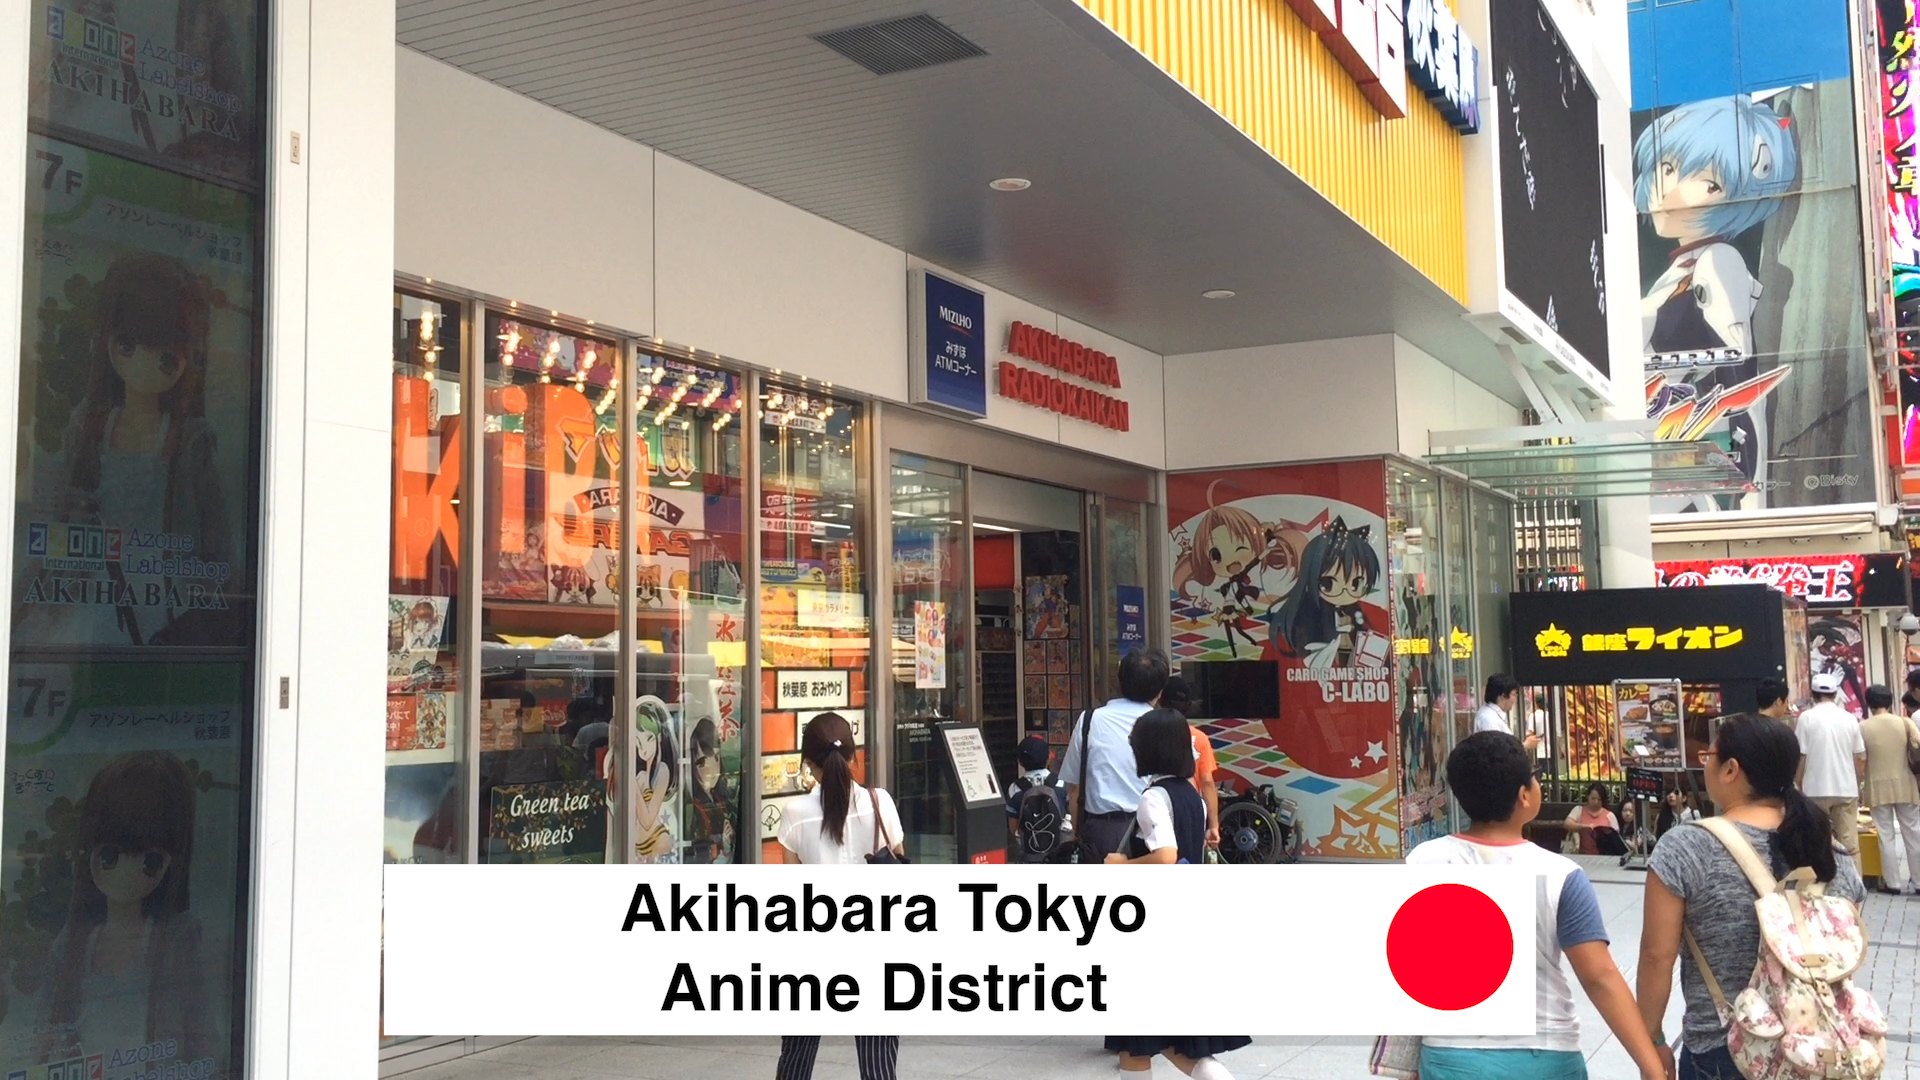 Akihabara Tokyo Anime District - Walking Around Akihabara Tokyo What To Do 2018 - Loot Anime Discount Code 2018 🇯🇵 🏙 📦